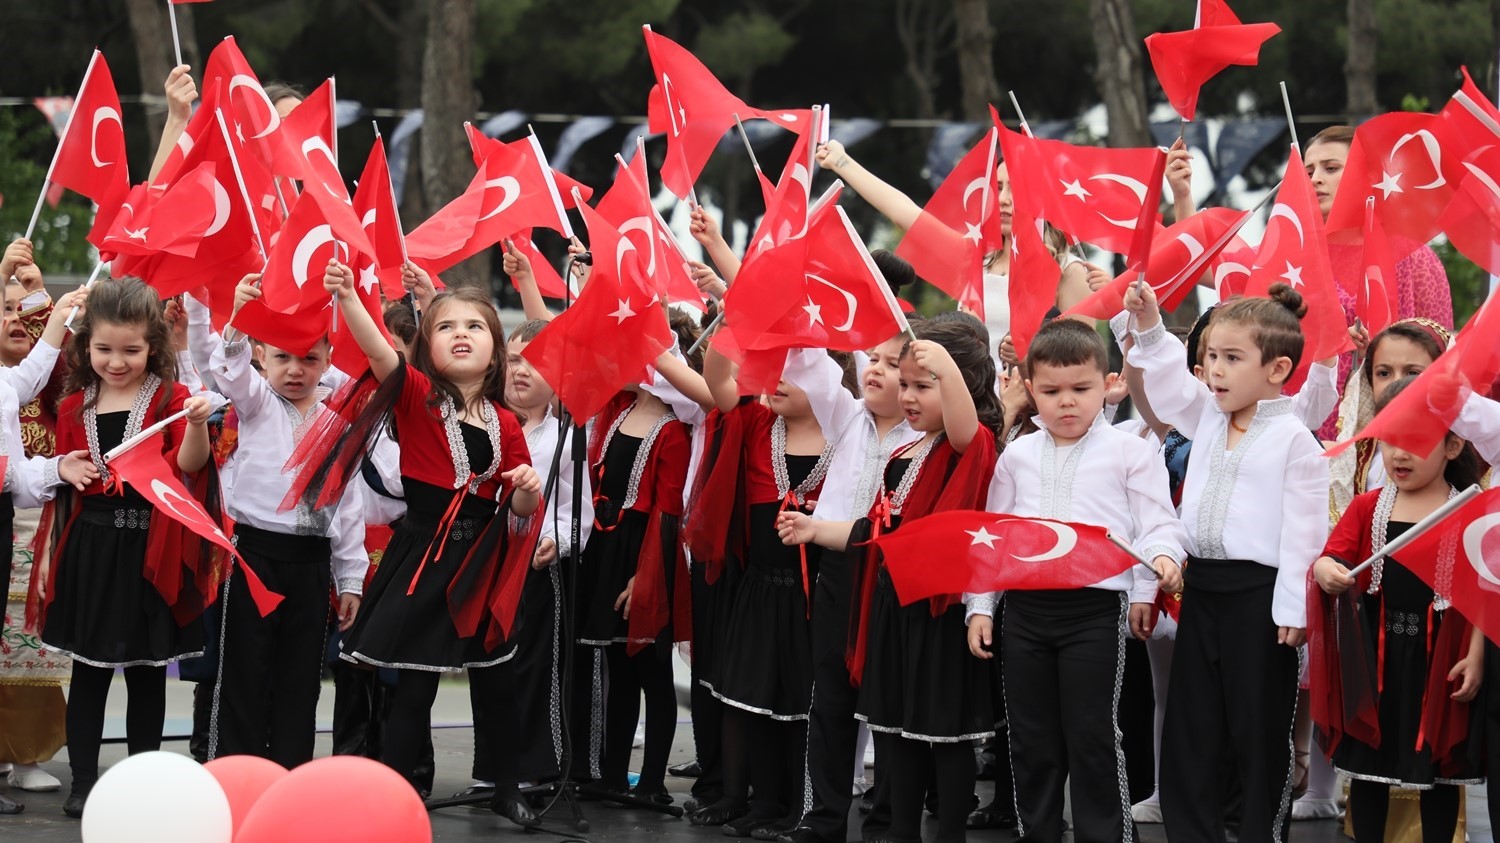 Aydın’daki çocuk gelişim merkezlerinde eğitim gören öğrenciler 23 Nisan’ı coşkuyla kutladı
